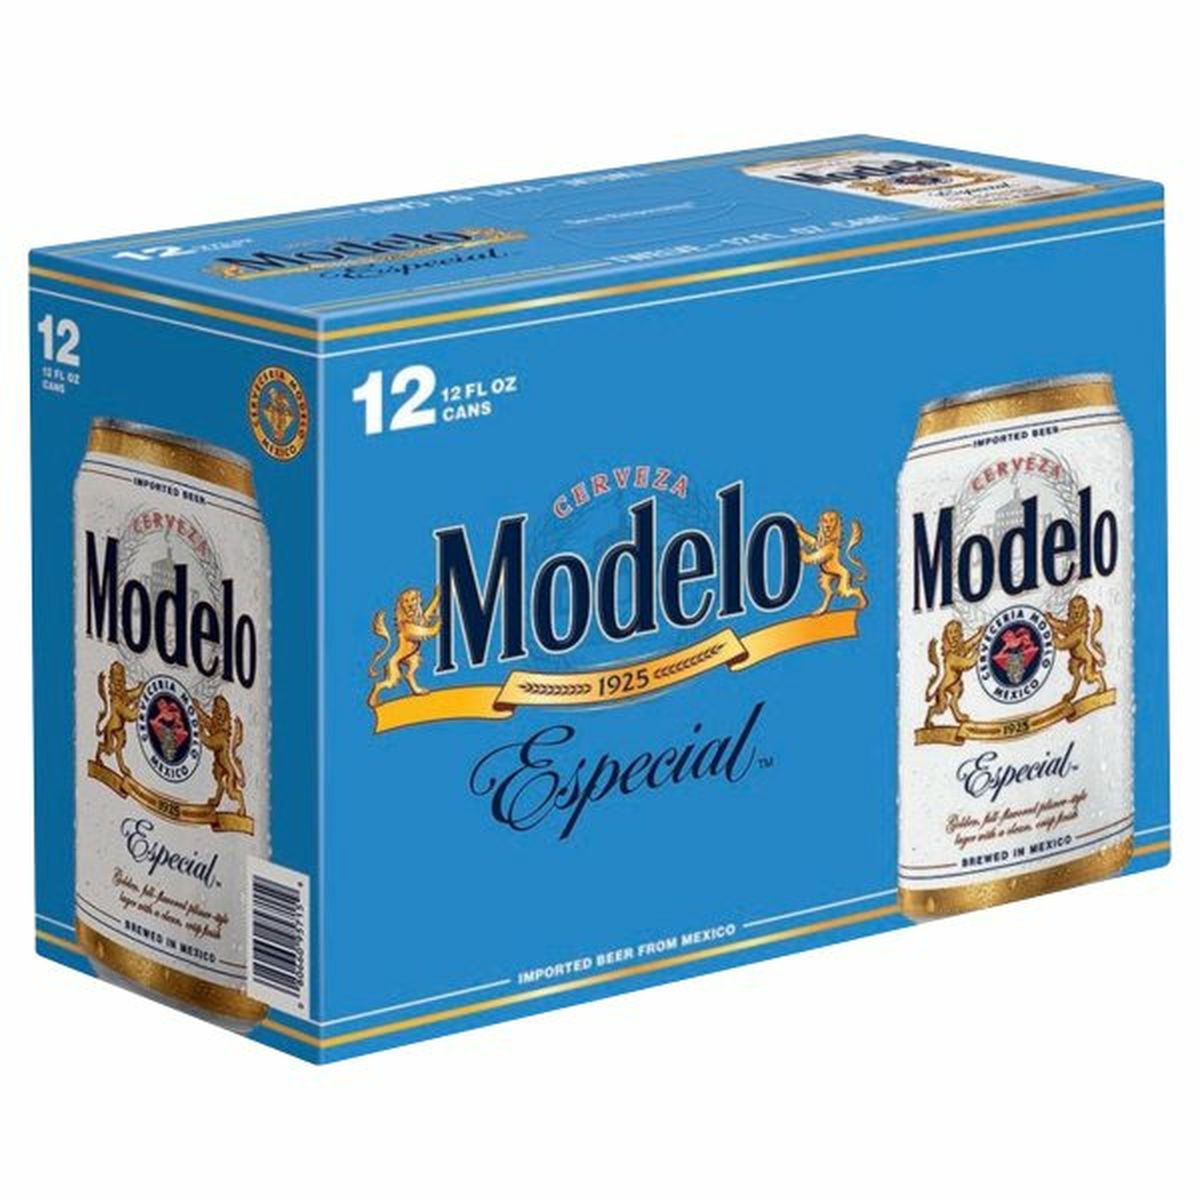 Calories in Modelo Especial Especial 12/12oz cans